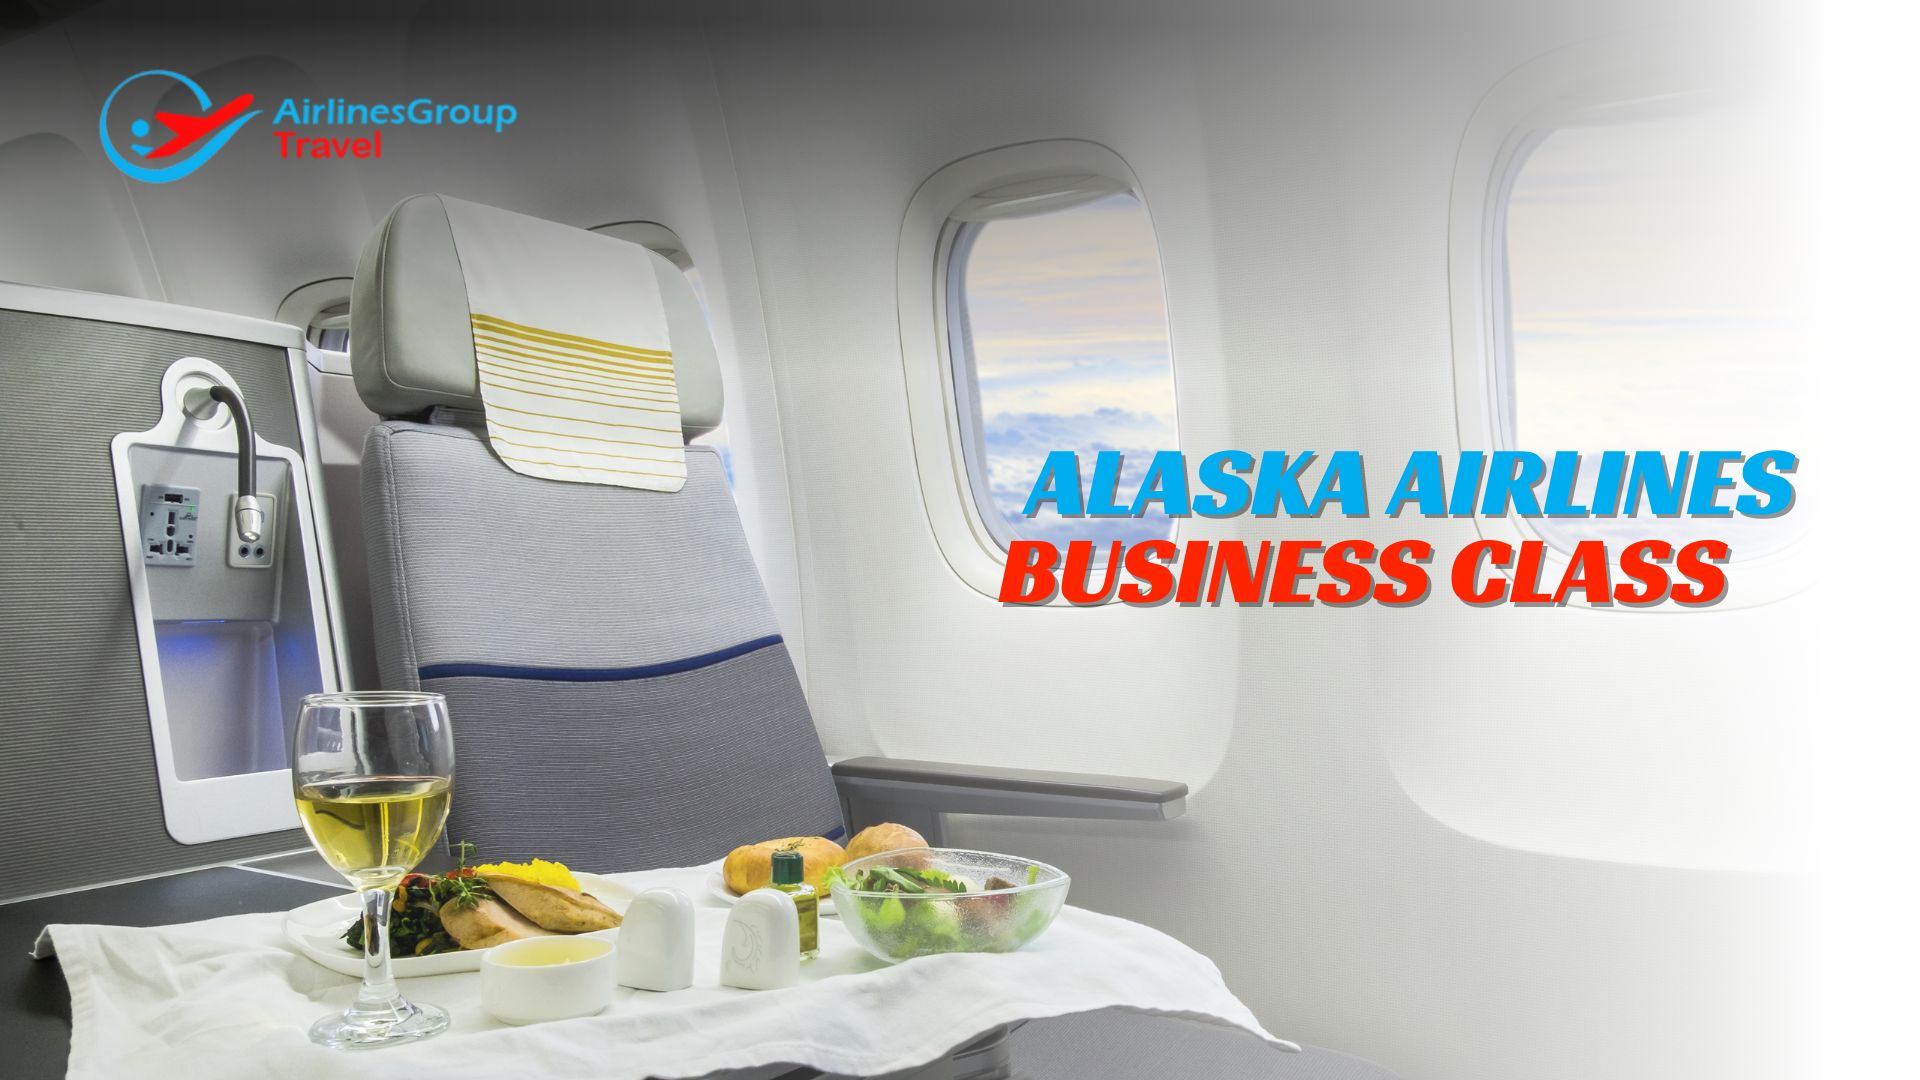 Alaska Airlines Business Class